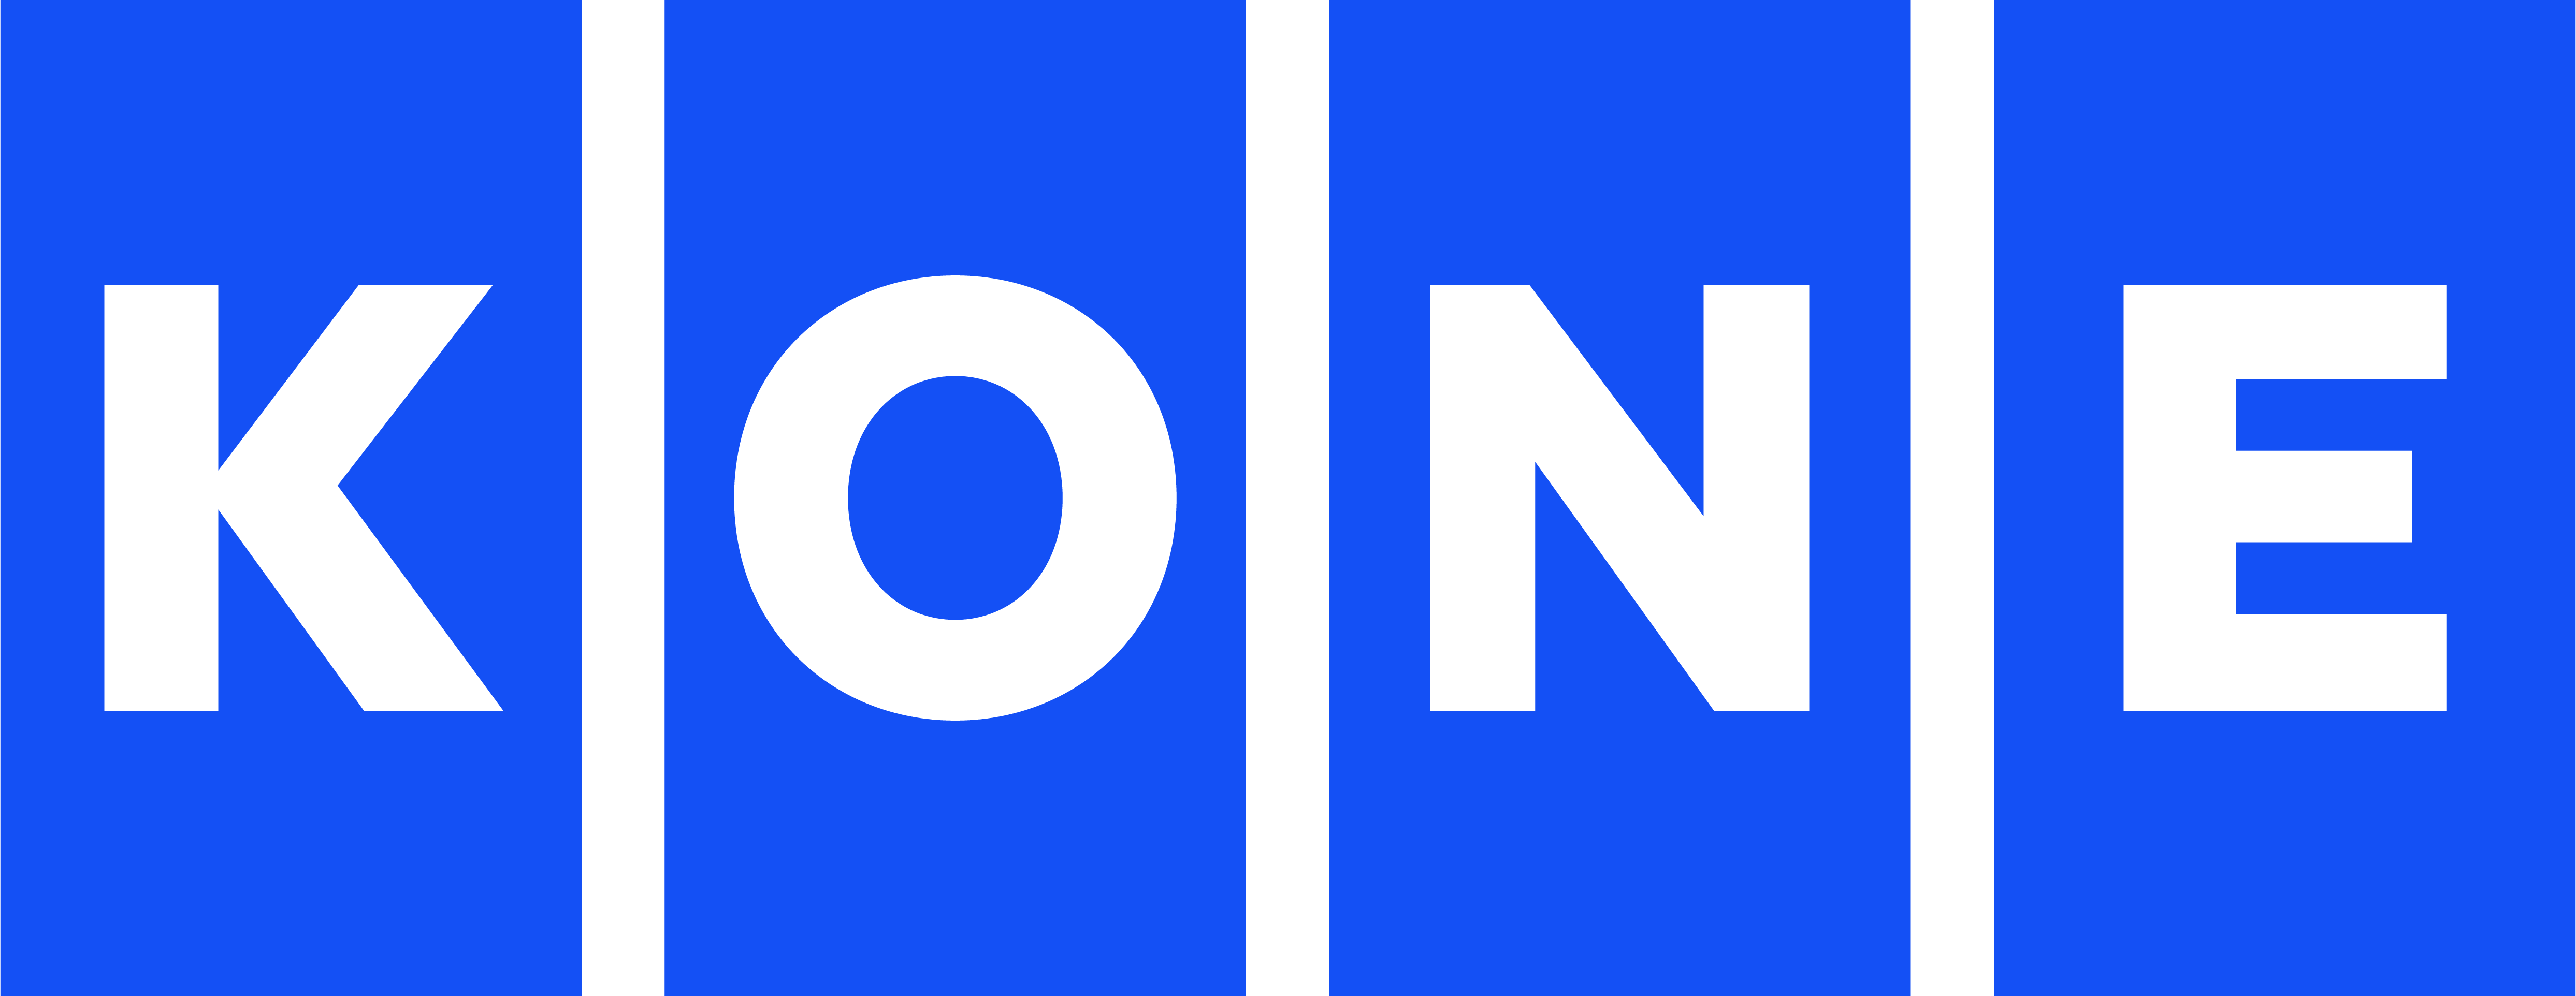 KONE Logo